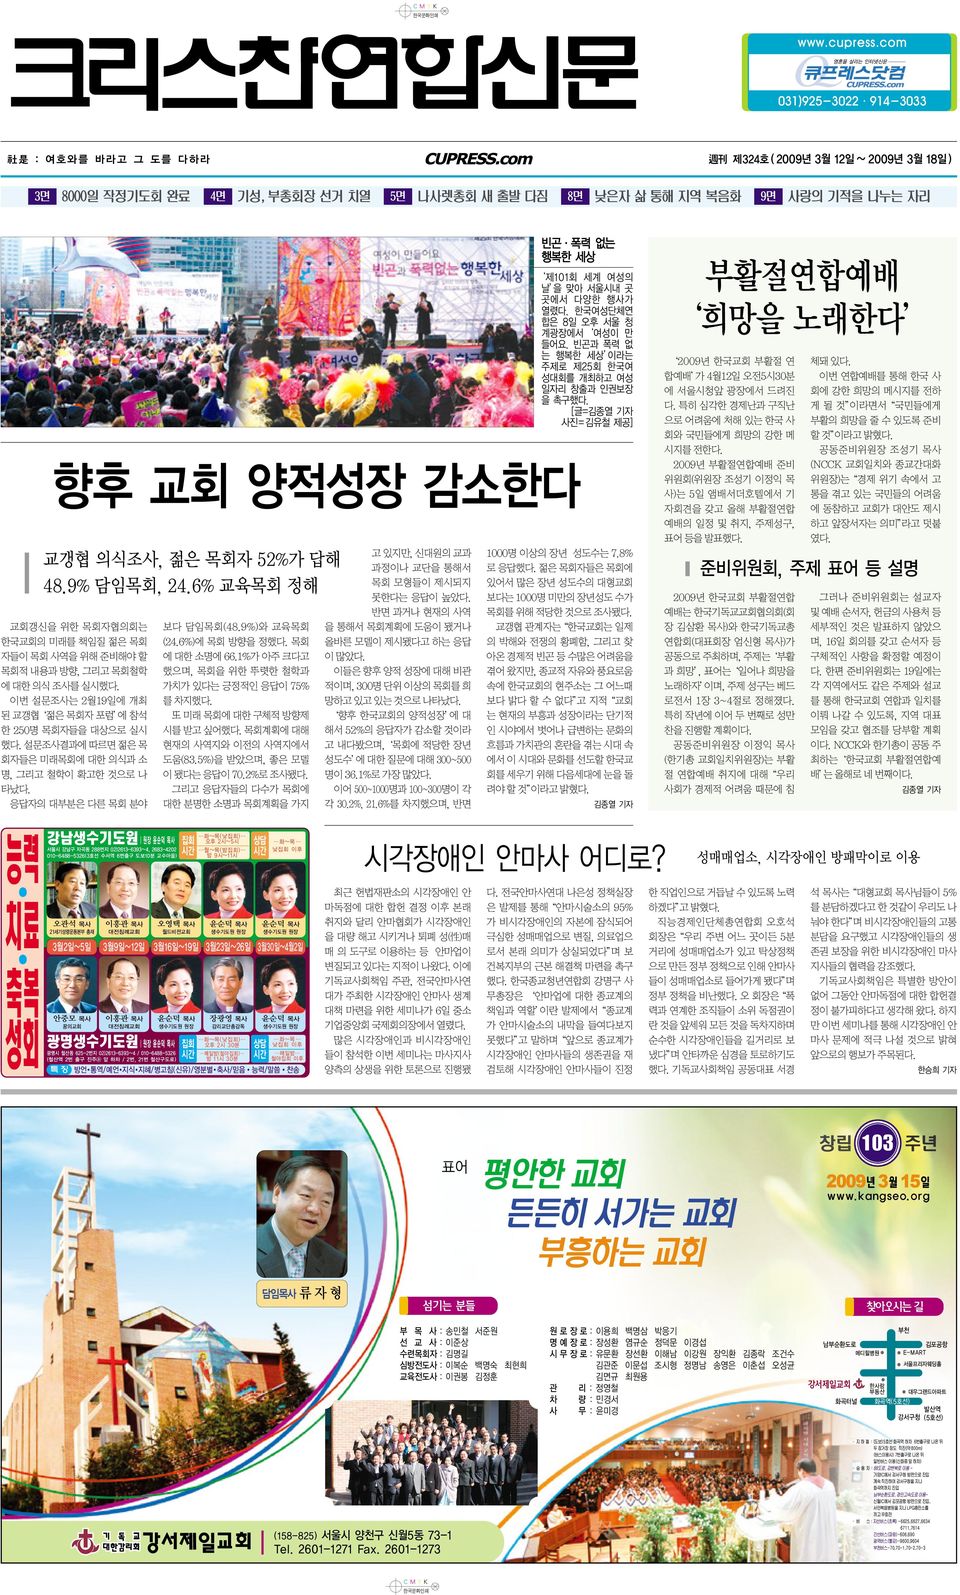 서울시내 곳 곳에서 다양한 행사가 열렸다. 한국여성단체연 합은 8일 오후 서울 청 계광장에서 여성이 만 들어요. 빈곤과 폭력 없 는 행복한 세상 이라는 주제로 제25회 한국여 성대회를 개최하고 여성 일자리 창출과 인권보장 을 촉구했다.